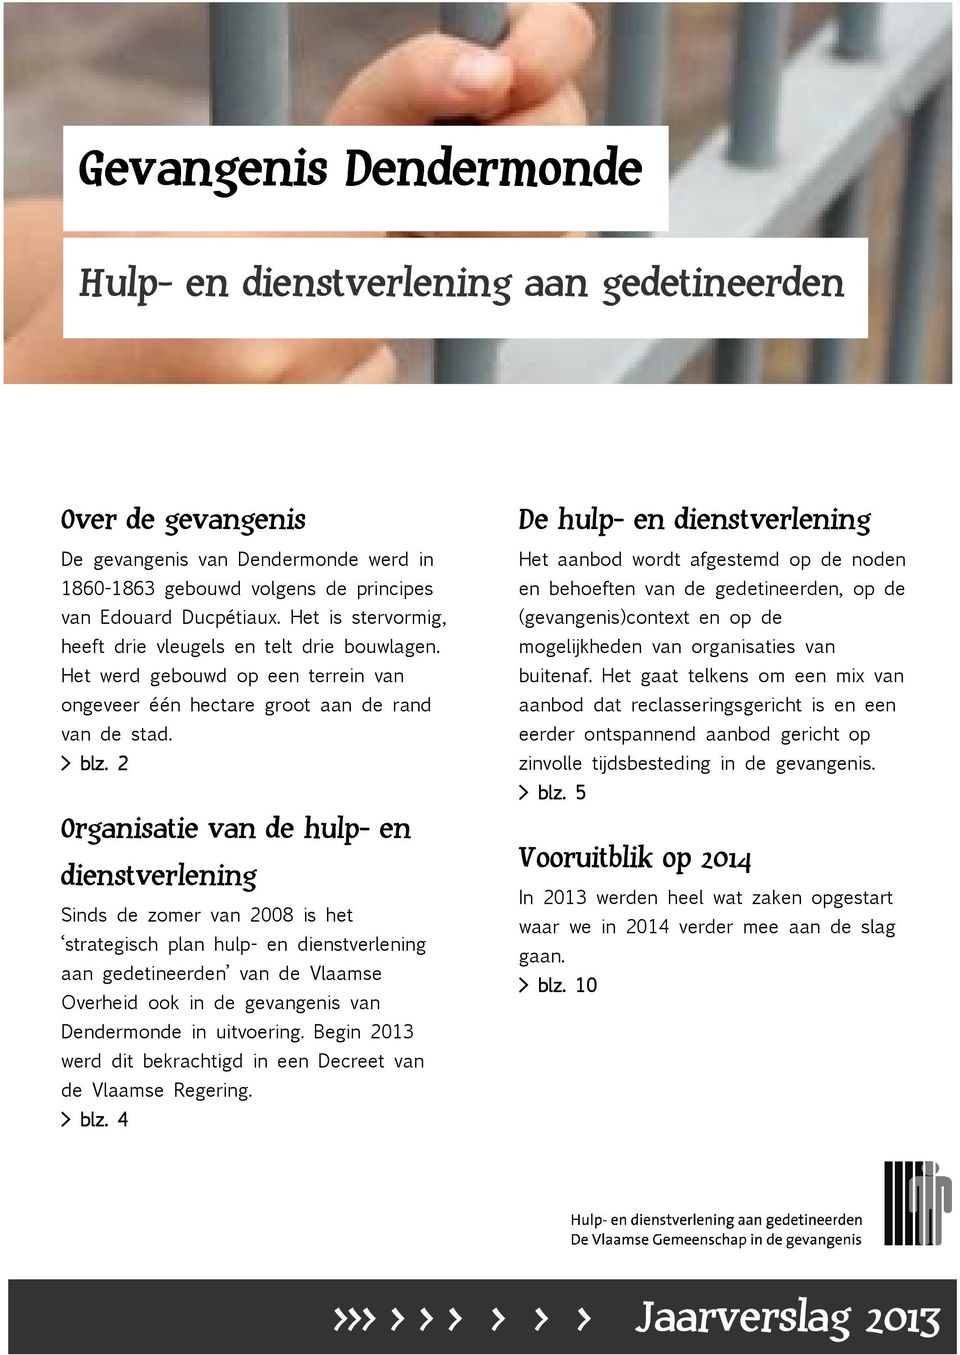 2 Organisatie van de hulp- en dienstverlening Sinds de zomer van 2008 is het strategisch plan hulp- en dienstverlening aan gedetineerden van de Vlaamse Overheid ook in de gevangenis van Dendermonde